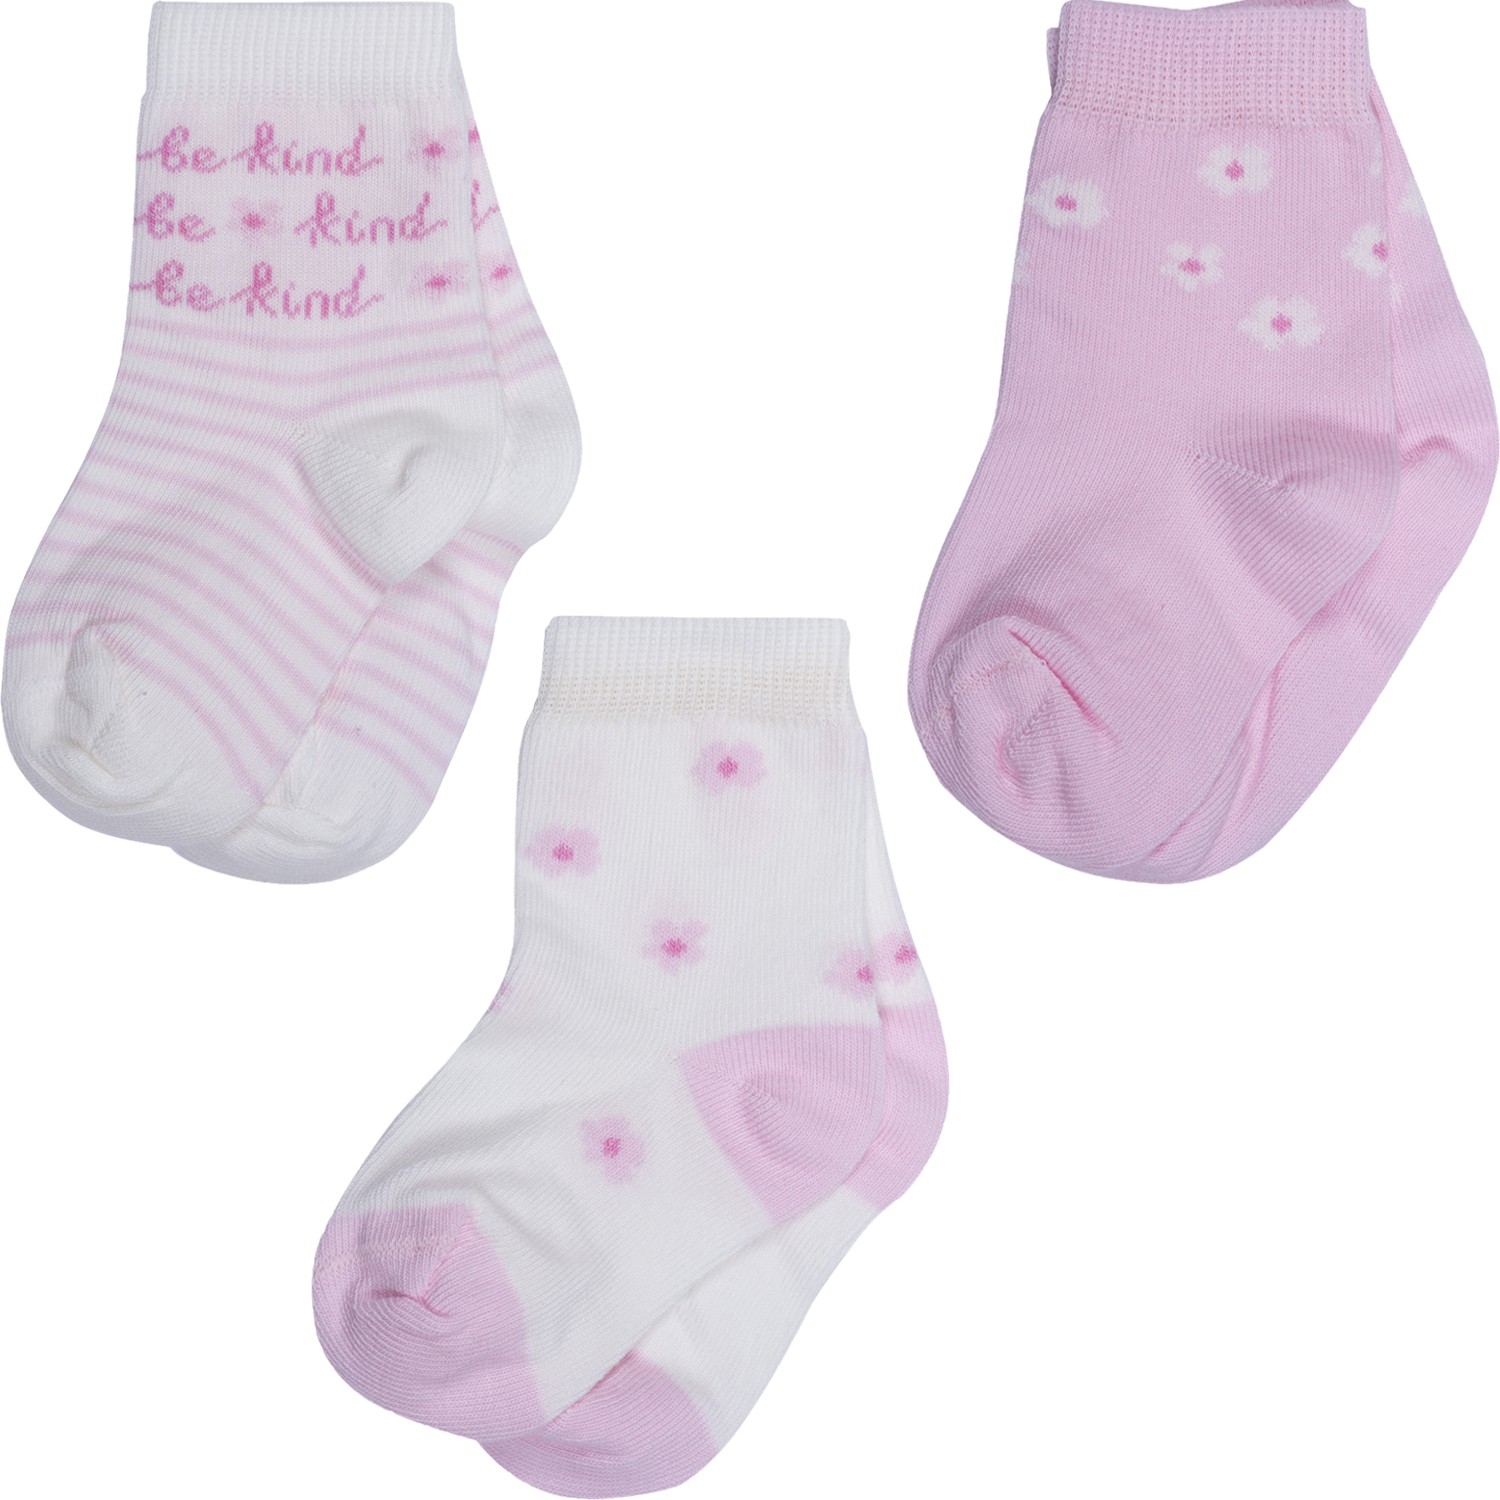 Носки для девочек Rusocks 3-Д3-13793 цв. бежевый; розовый р. 8-10 бюстгальтер push up розовый с деталями из сетки в горошек